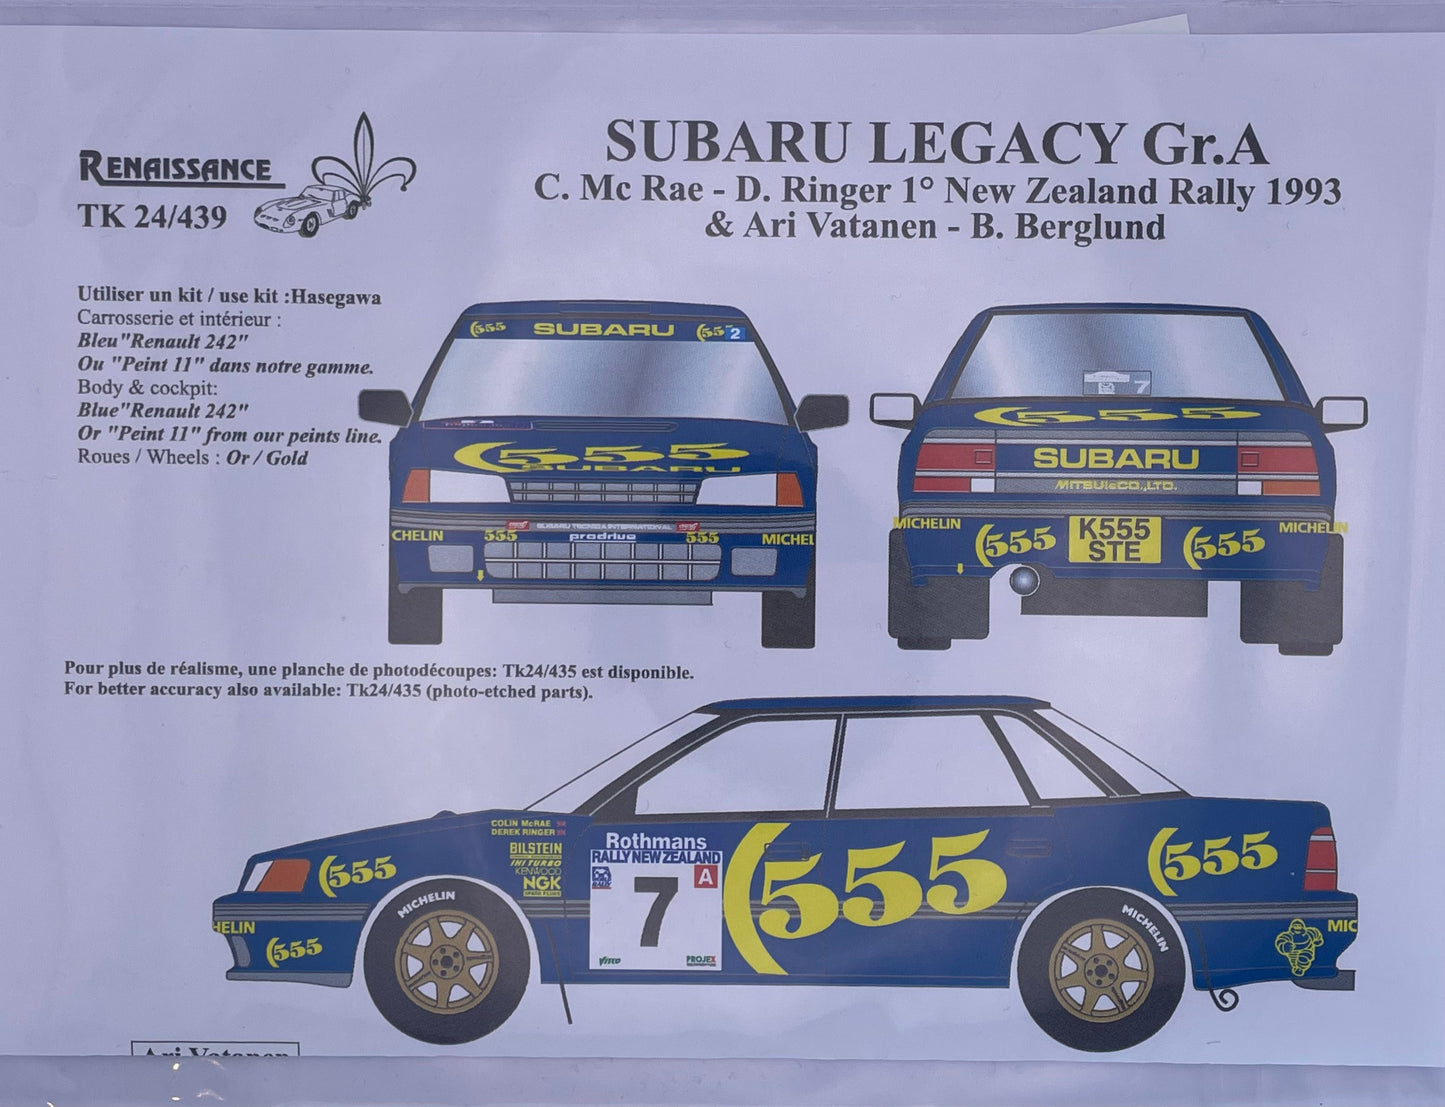 AUTOCOLLANTS SUBARU LEGACY RS GR.A - RALLYE DE NOUVELLE-ZÉLANDE 1993